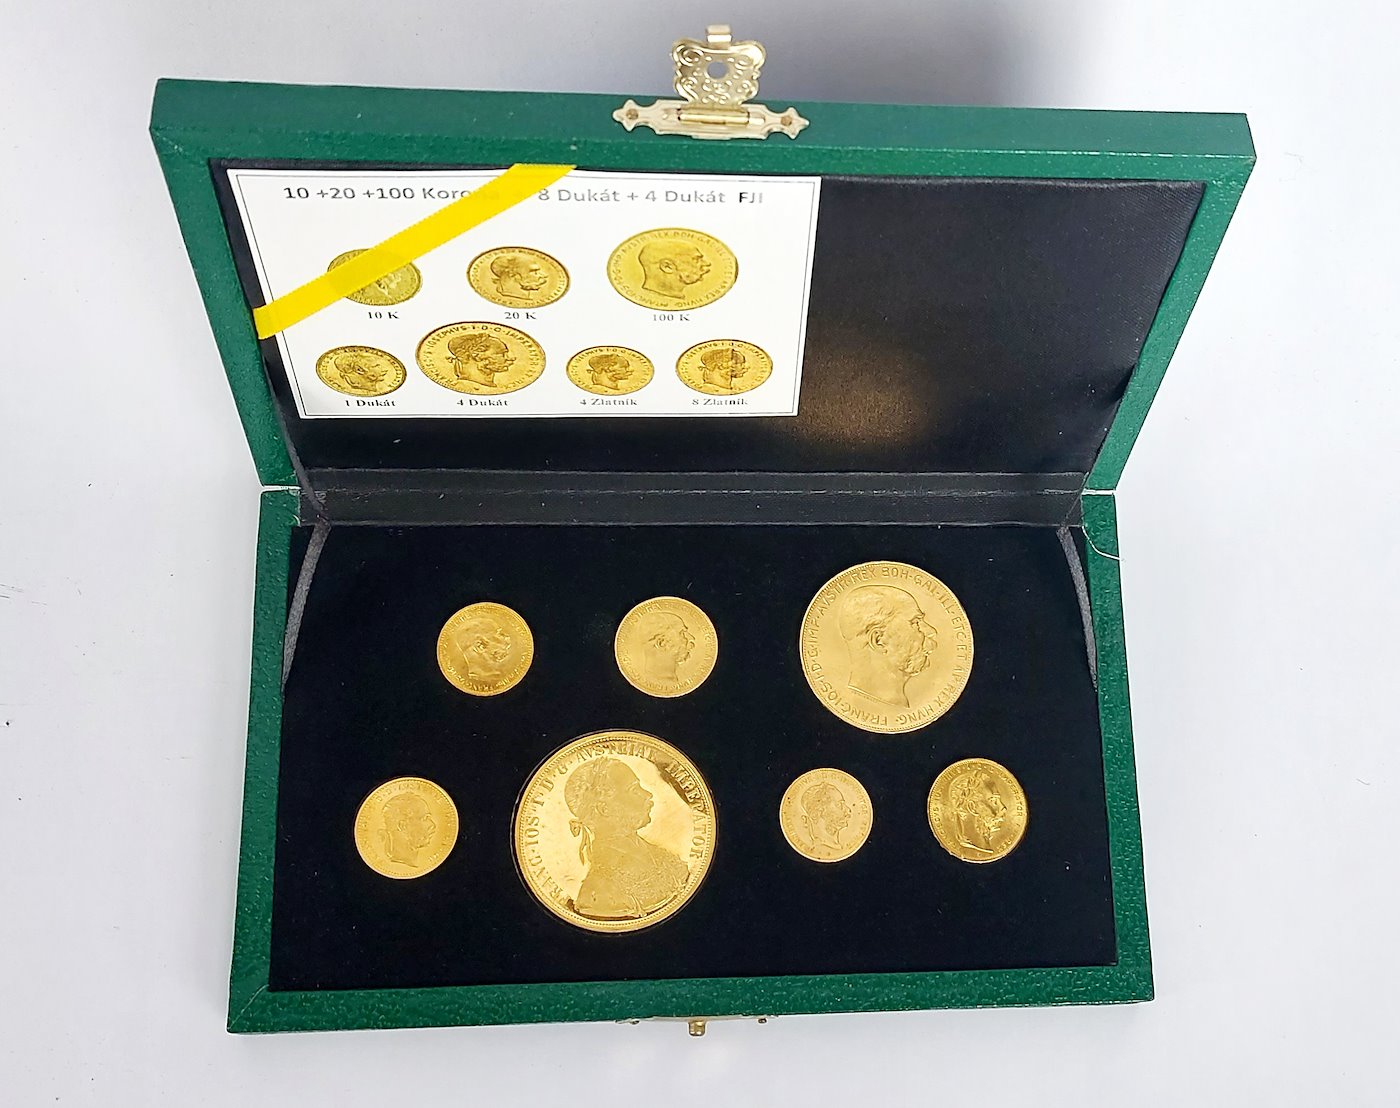 .. - SADA v etue pokračujících ražeb zlatých mincí Vídeňské mincovny 10, 20, 100 koruna, 1, 4 dukát, 4 a 8 zlatník, zlato 900/1000,  986/1000, hrubá hmotnost celkem 71,139 g